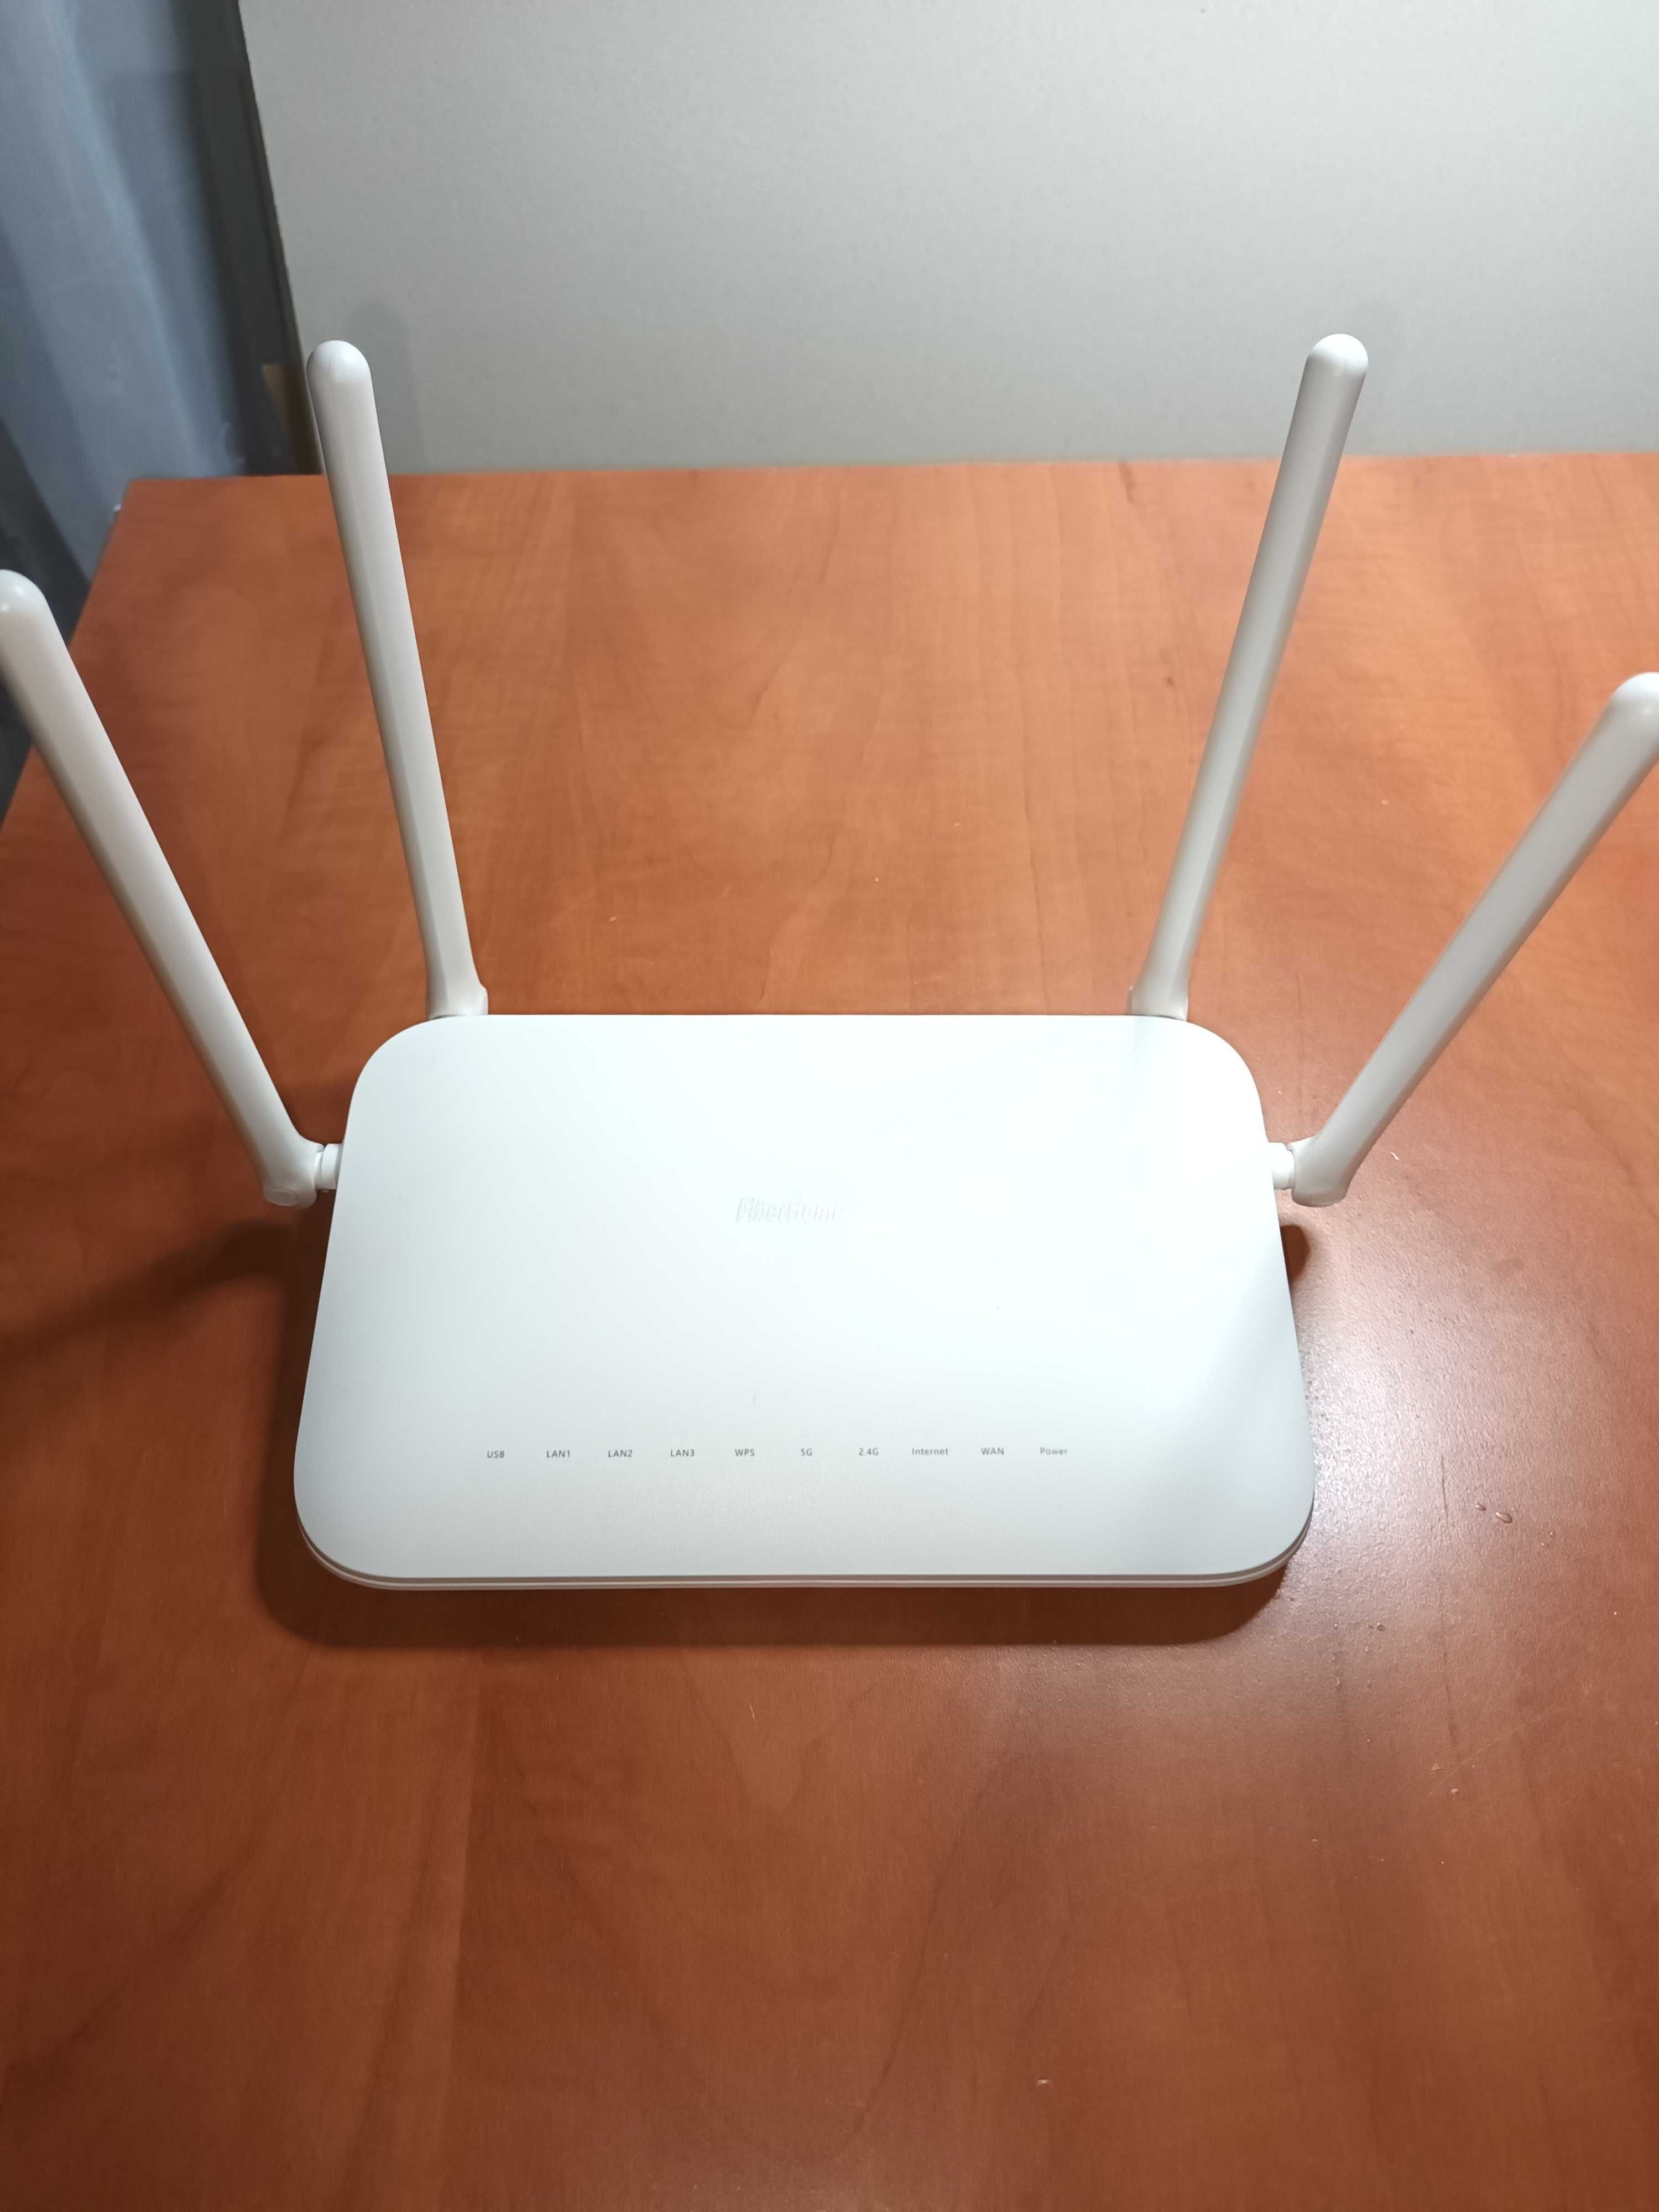 Router internet Wireless FiberHome SR1041K WiFI 6 1000 Mbps